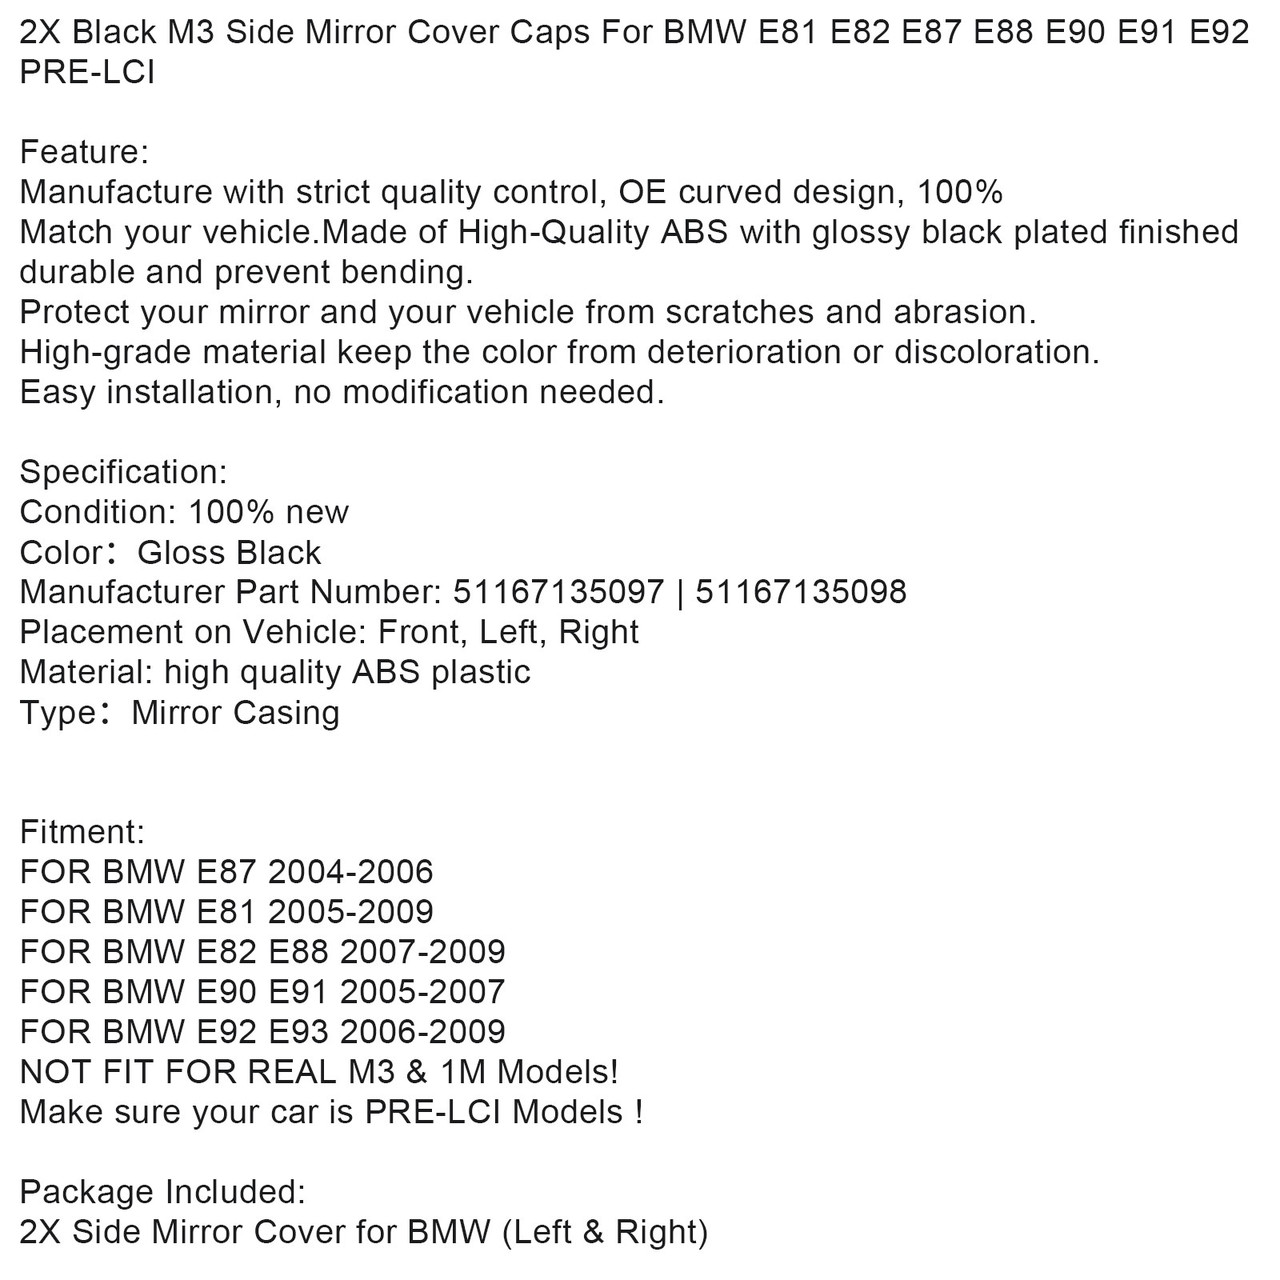 Black M3 Side Mirror Cover Caps for BMW E81 E82 E87 E88 E90 E91 E92 PRE-LCI